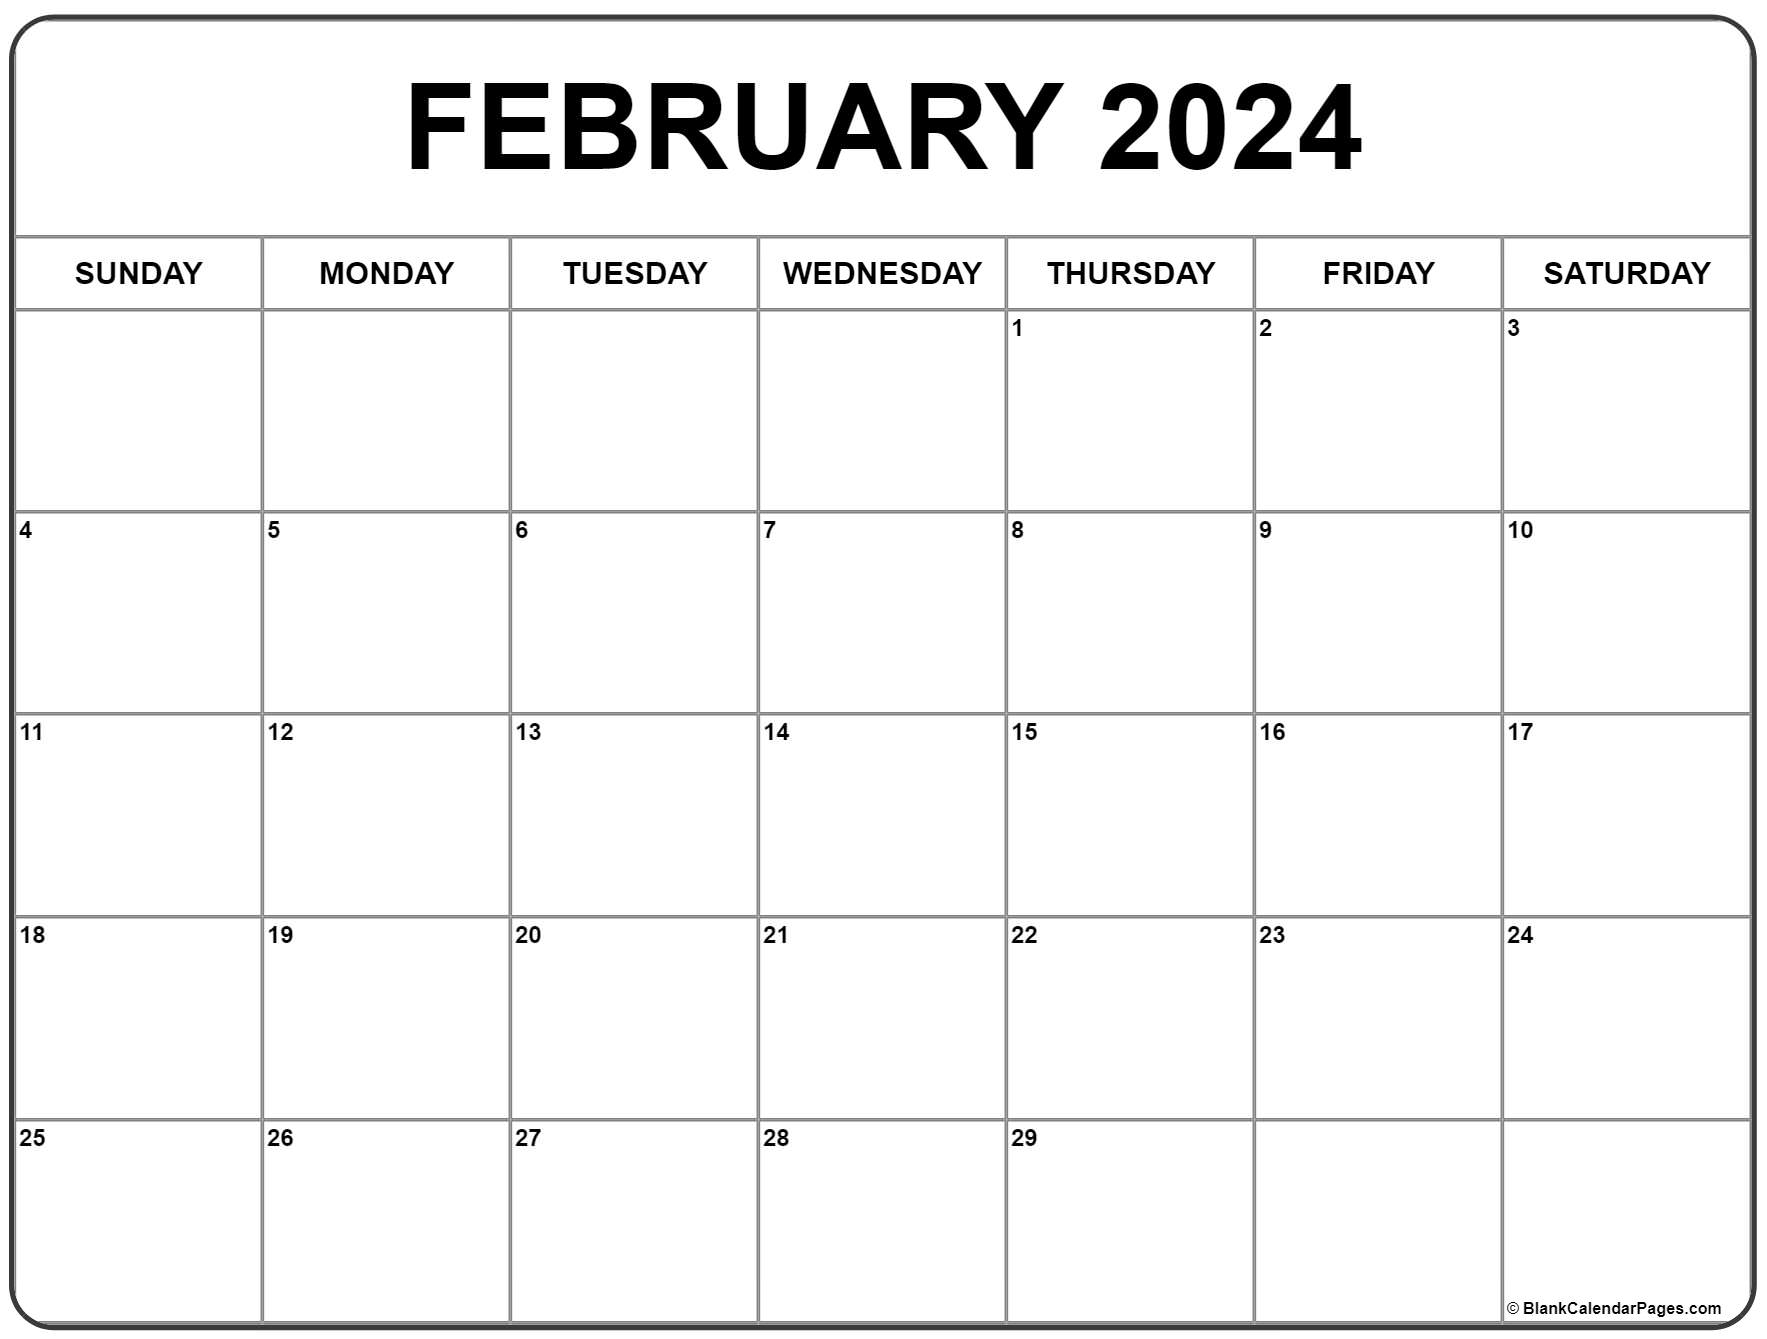 February 2024 Calendar | Free Printable Calendar for Blank February Calendar 2024 Printable